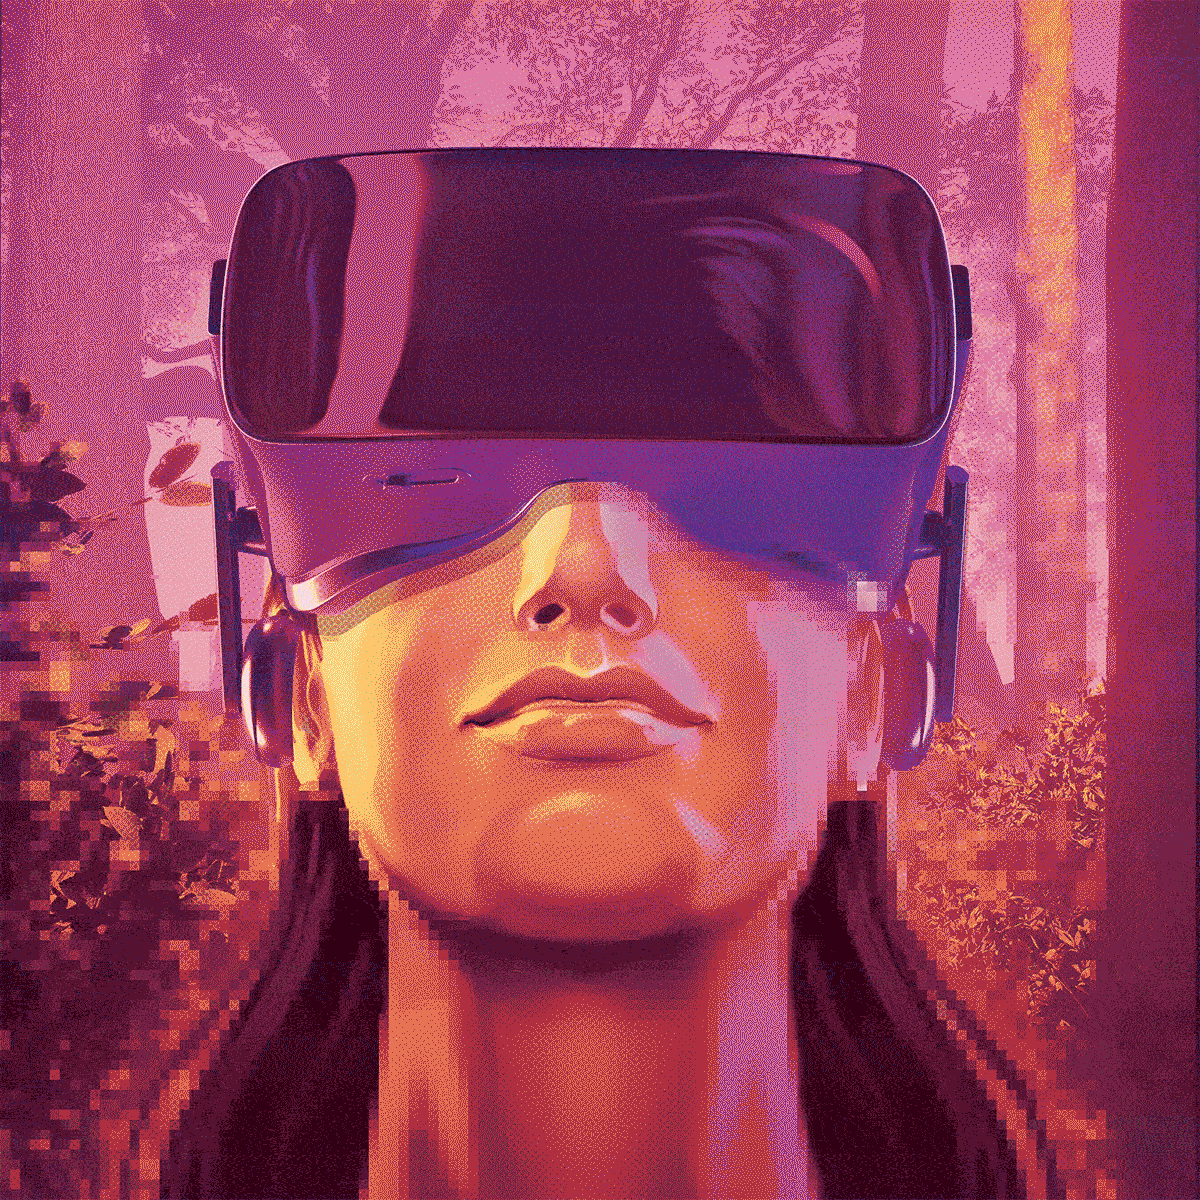 Avenir de la technologie: une femme qui porte un casque de ralit virtuelle (VR).